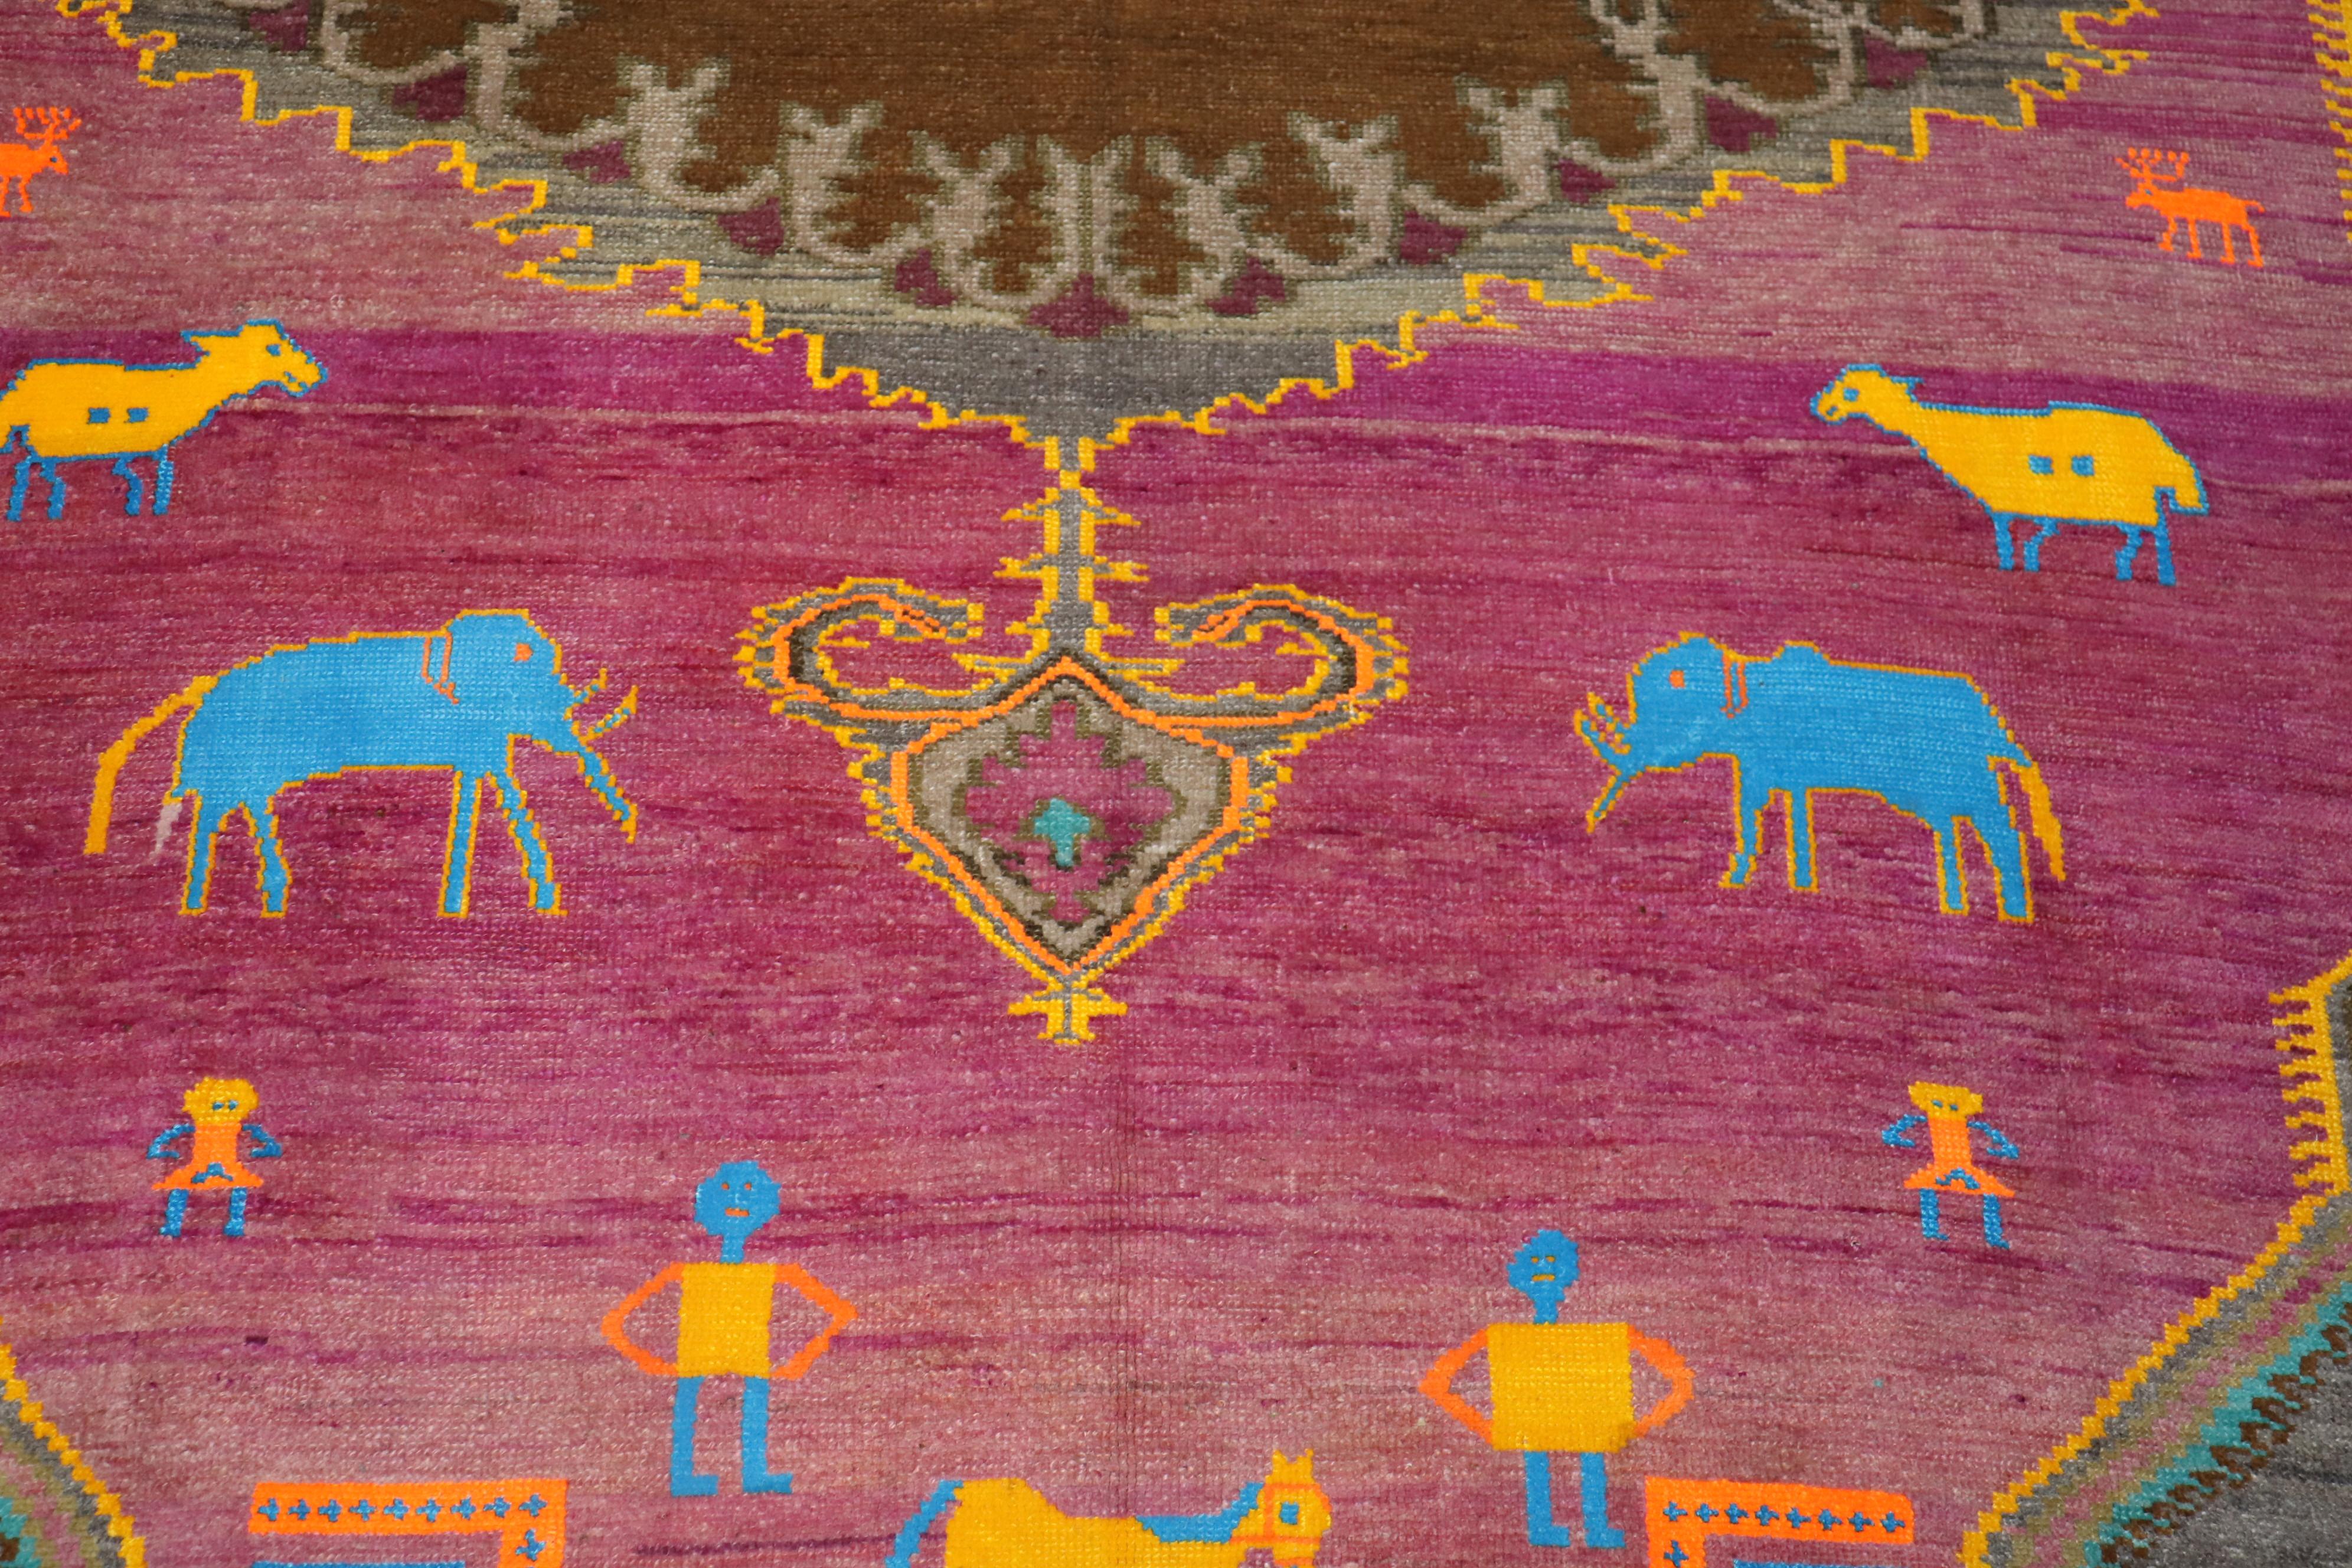 Einzigartiges skurriles türkisches Tier-Mensch-Figur-Motiv auf fuchsiafarbenem Grund. Dieser Teppich stammt aus der Mitte des 20. Jahrhunderts. Elefanten, Pferde und Menschen schweben in lebhaftem Gelb und leuchtendem Blau über das Feld.
Ein